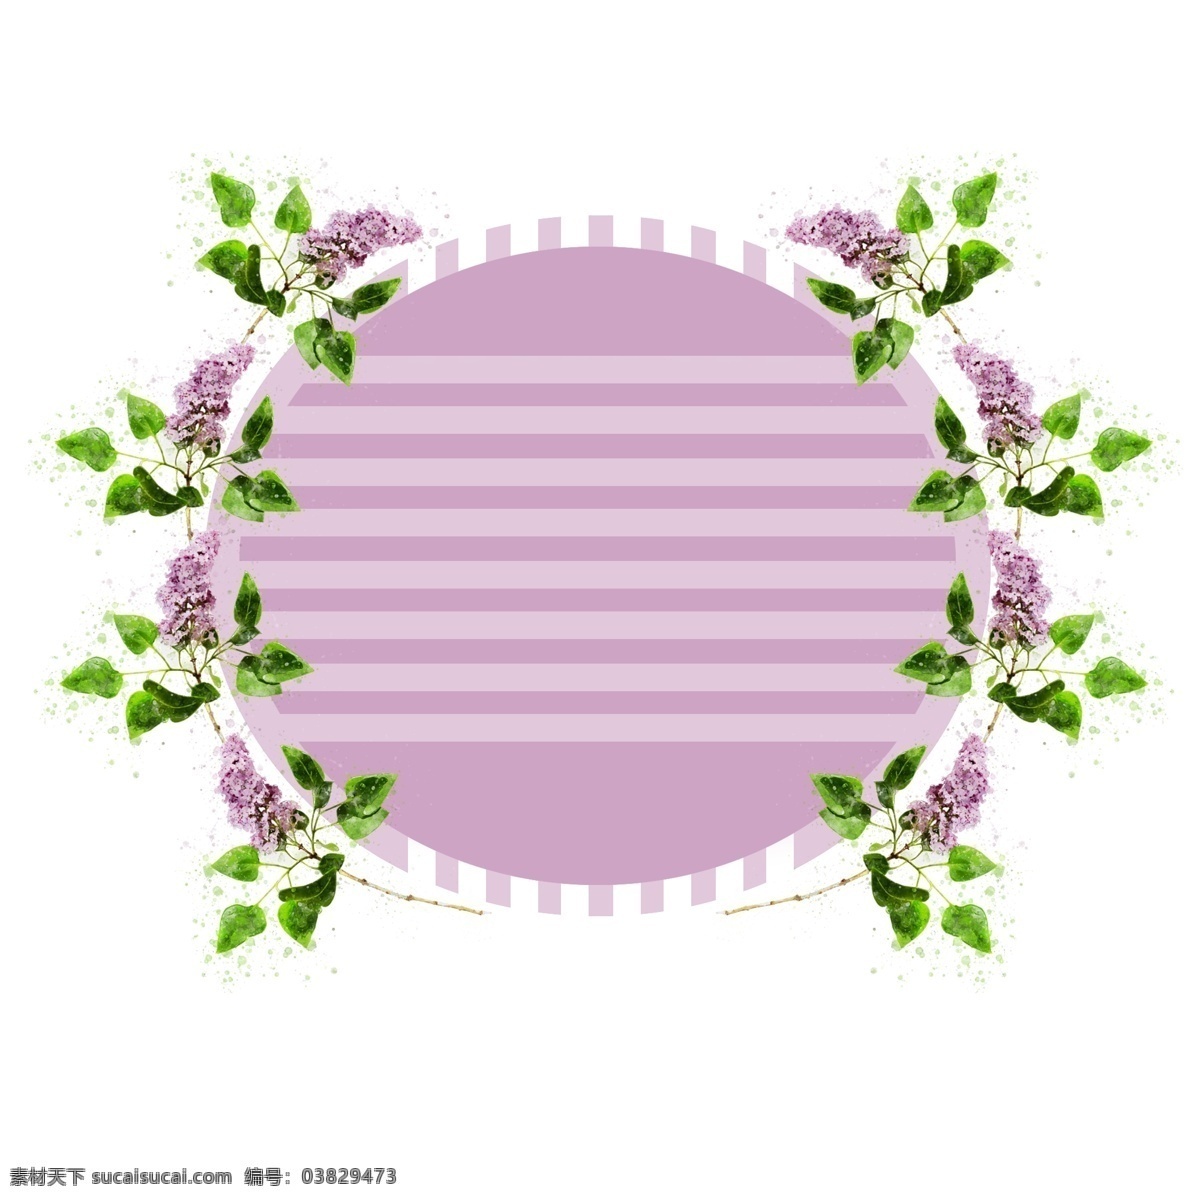 手绘 紫色 花卉 植物 水彩 圆形 边框 元素 原创 水彩边框 植物边框 圆形边框